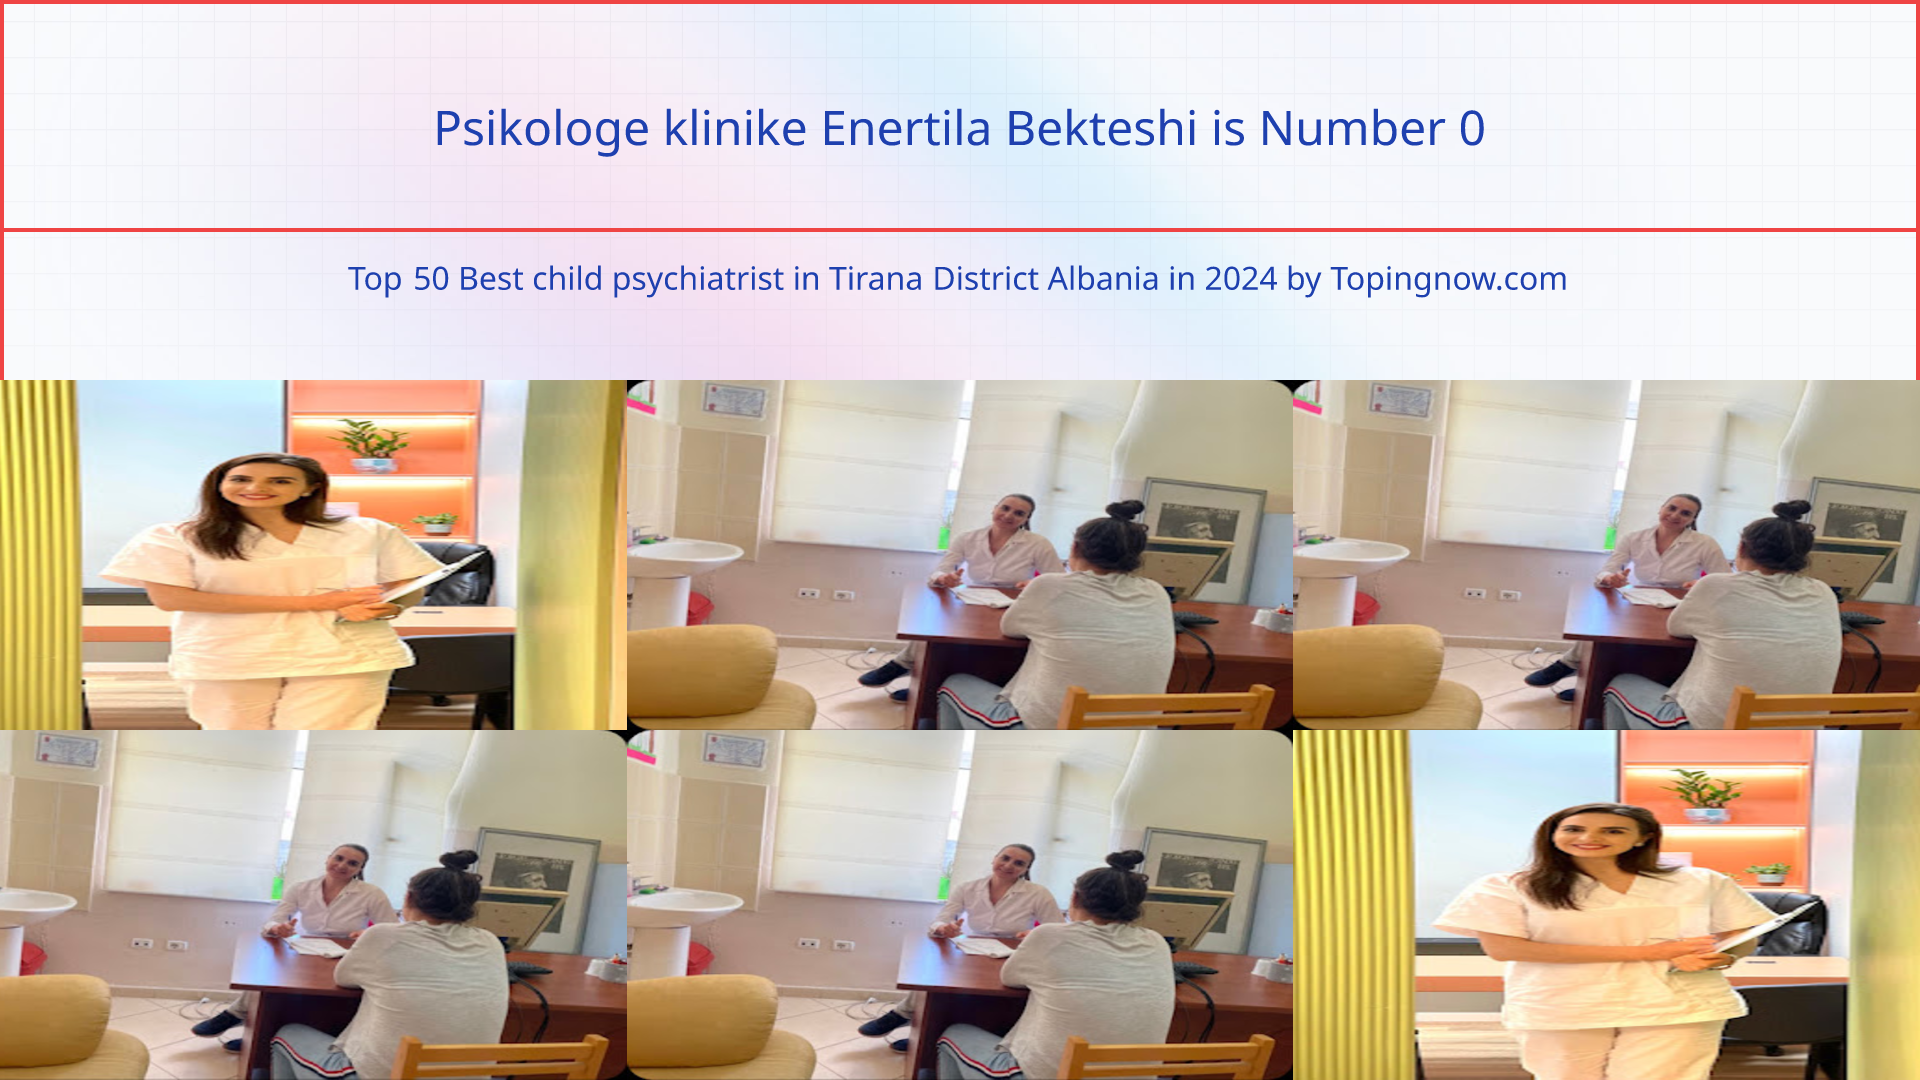 Psikologe klinike Enertila Bekteshi: Top 50 Best child psychiatrist in Tirana District Albania in 2024